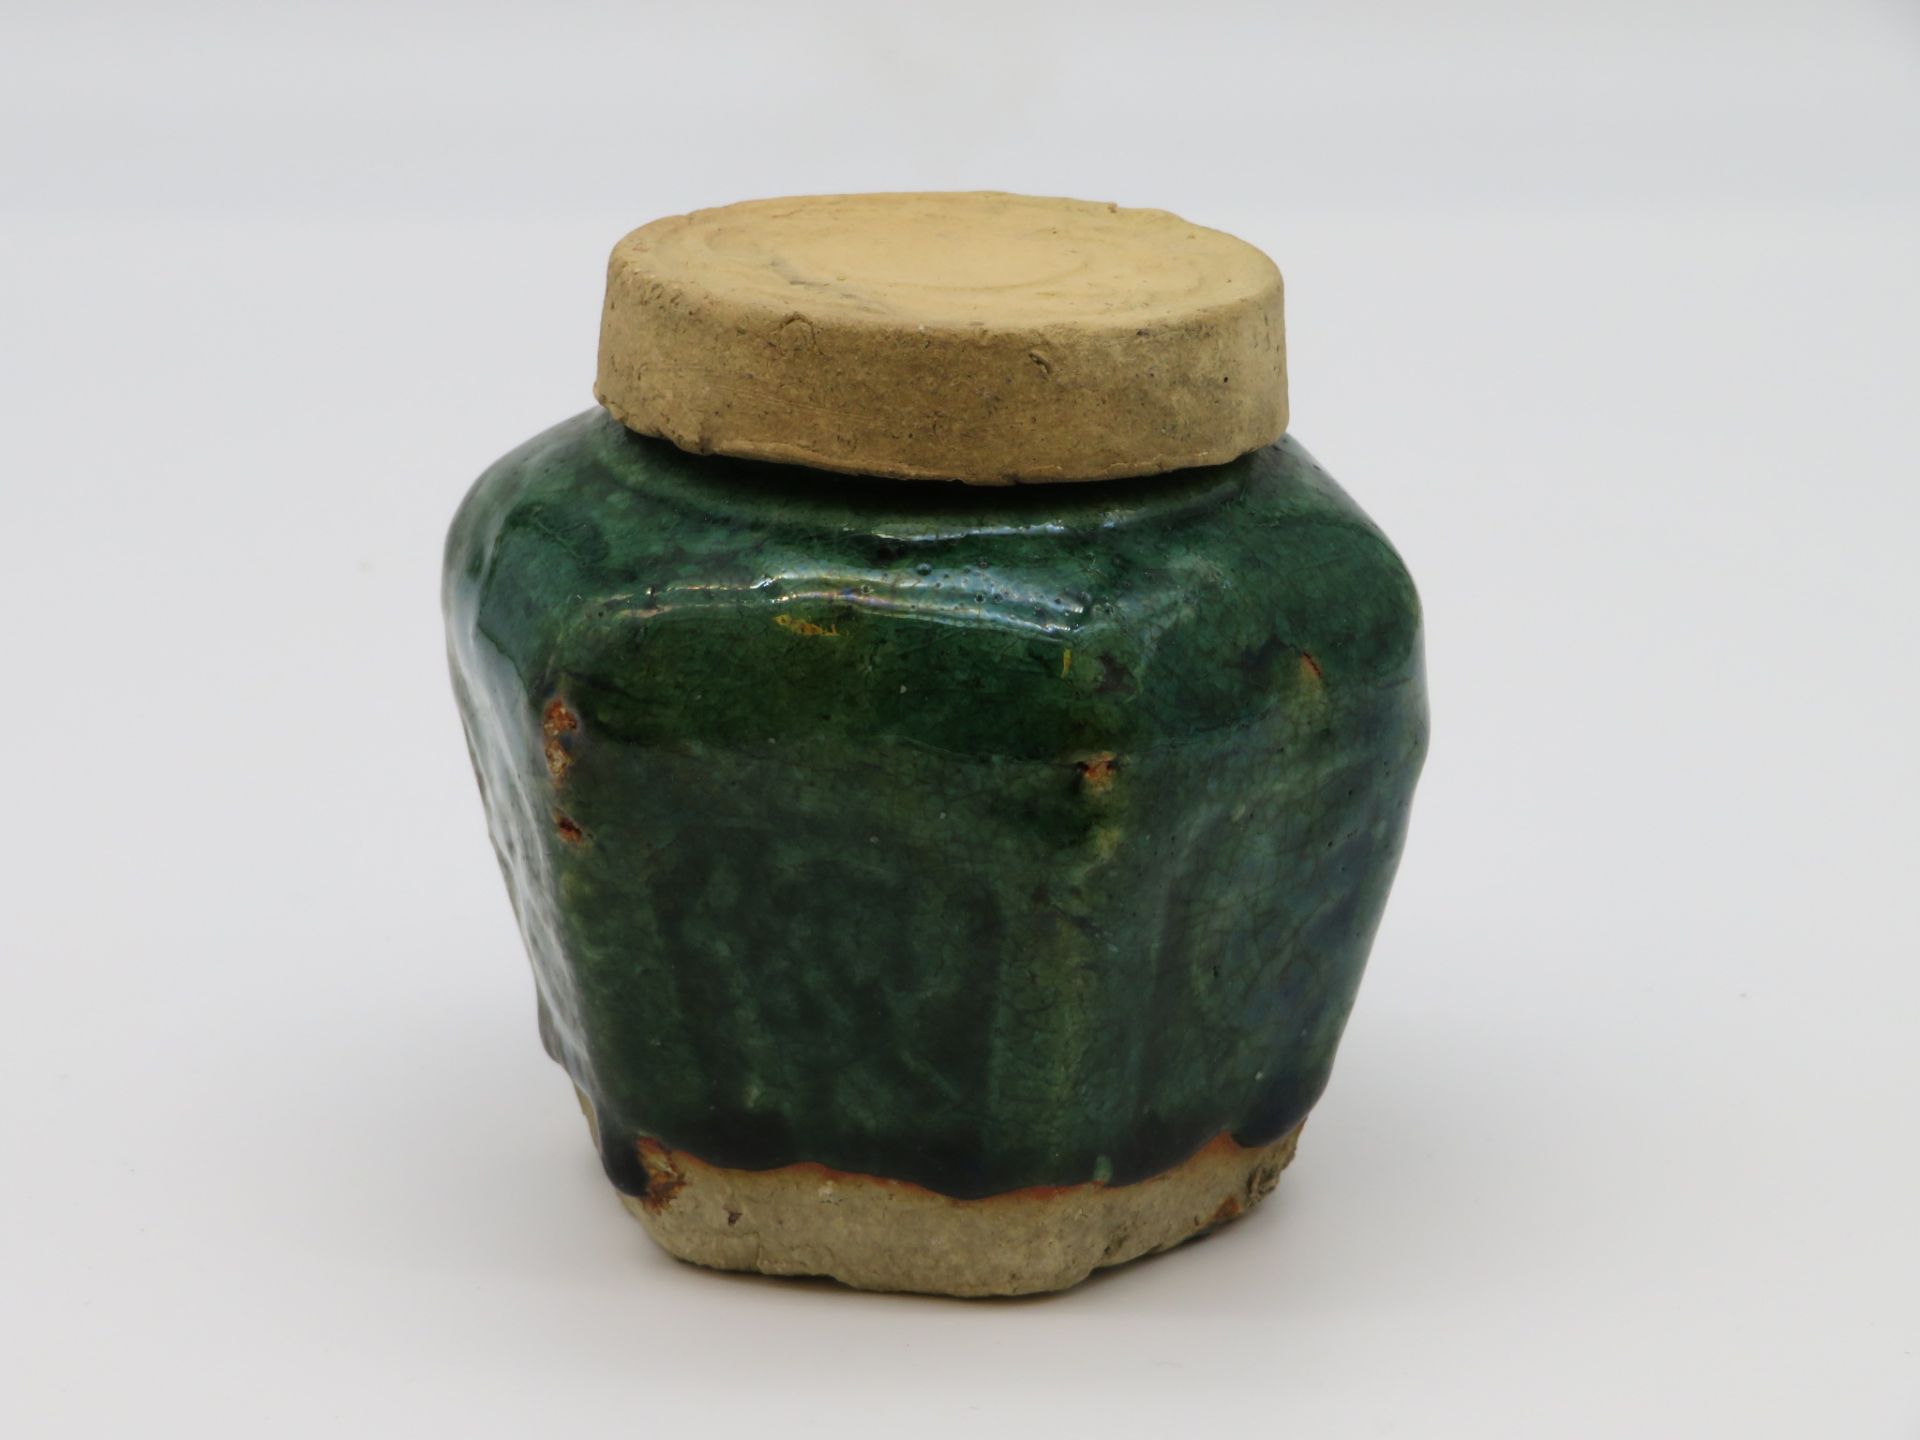 Ingwertopf, China, Ton mit grüner Glasur, h 10,5 cm, d 11 cm.